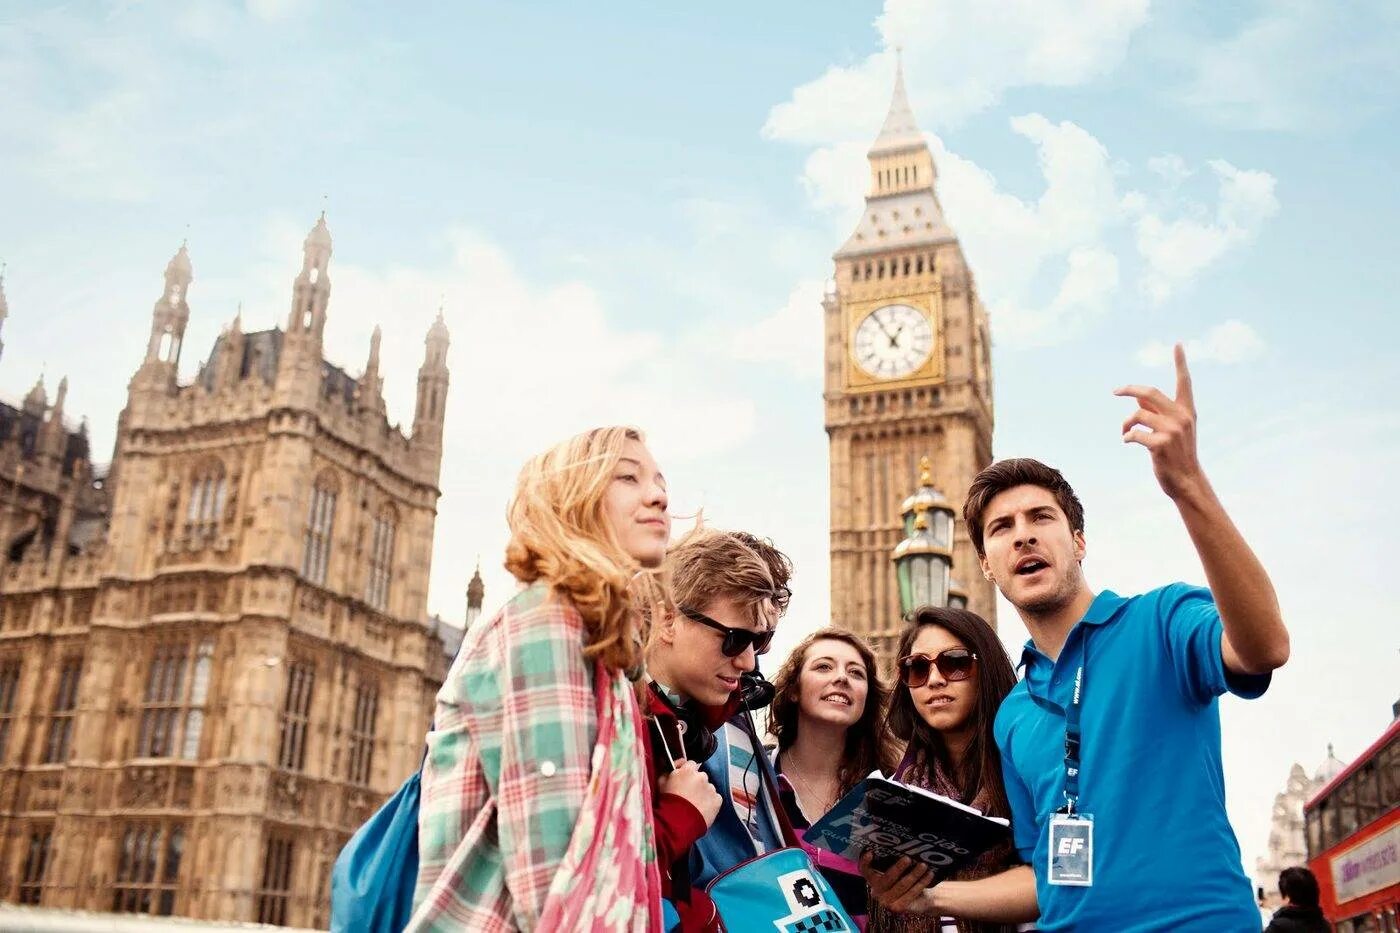 Друг на иностранном языке. Туризм в Великобритании. Английский с носителем. Путешествия и иностранные языки. Туристы в Британии.